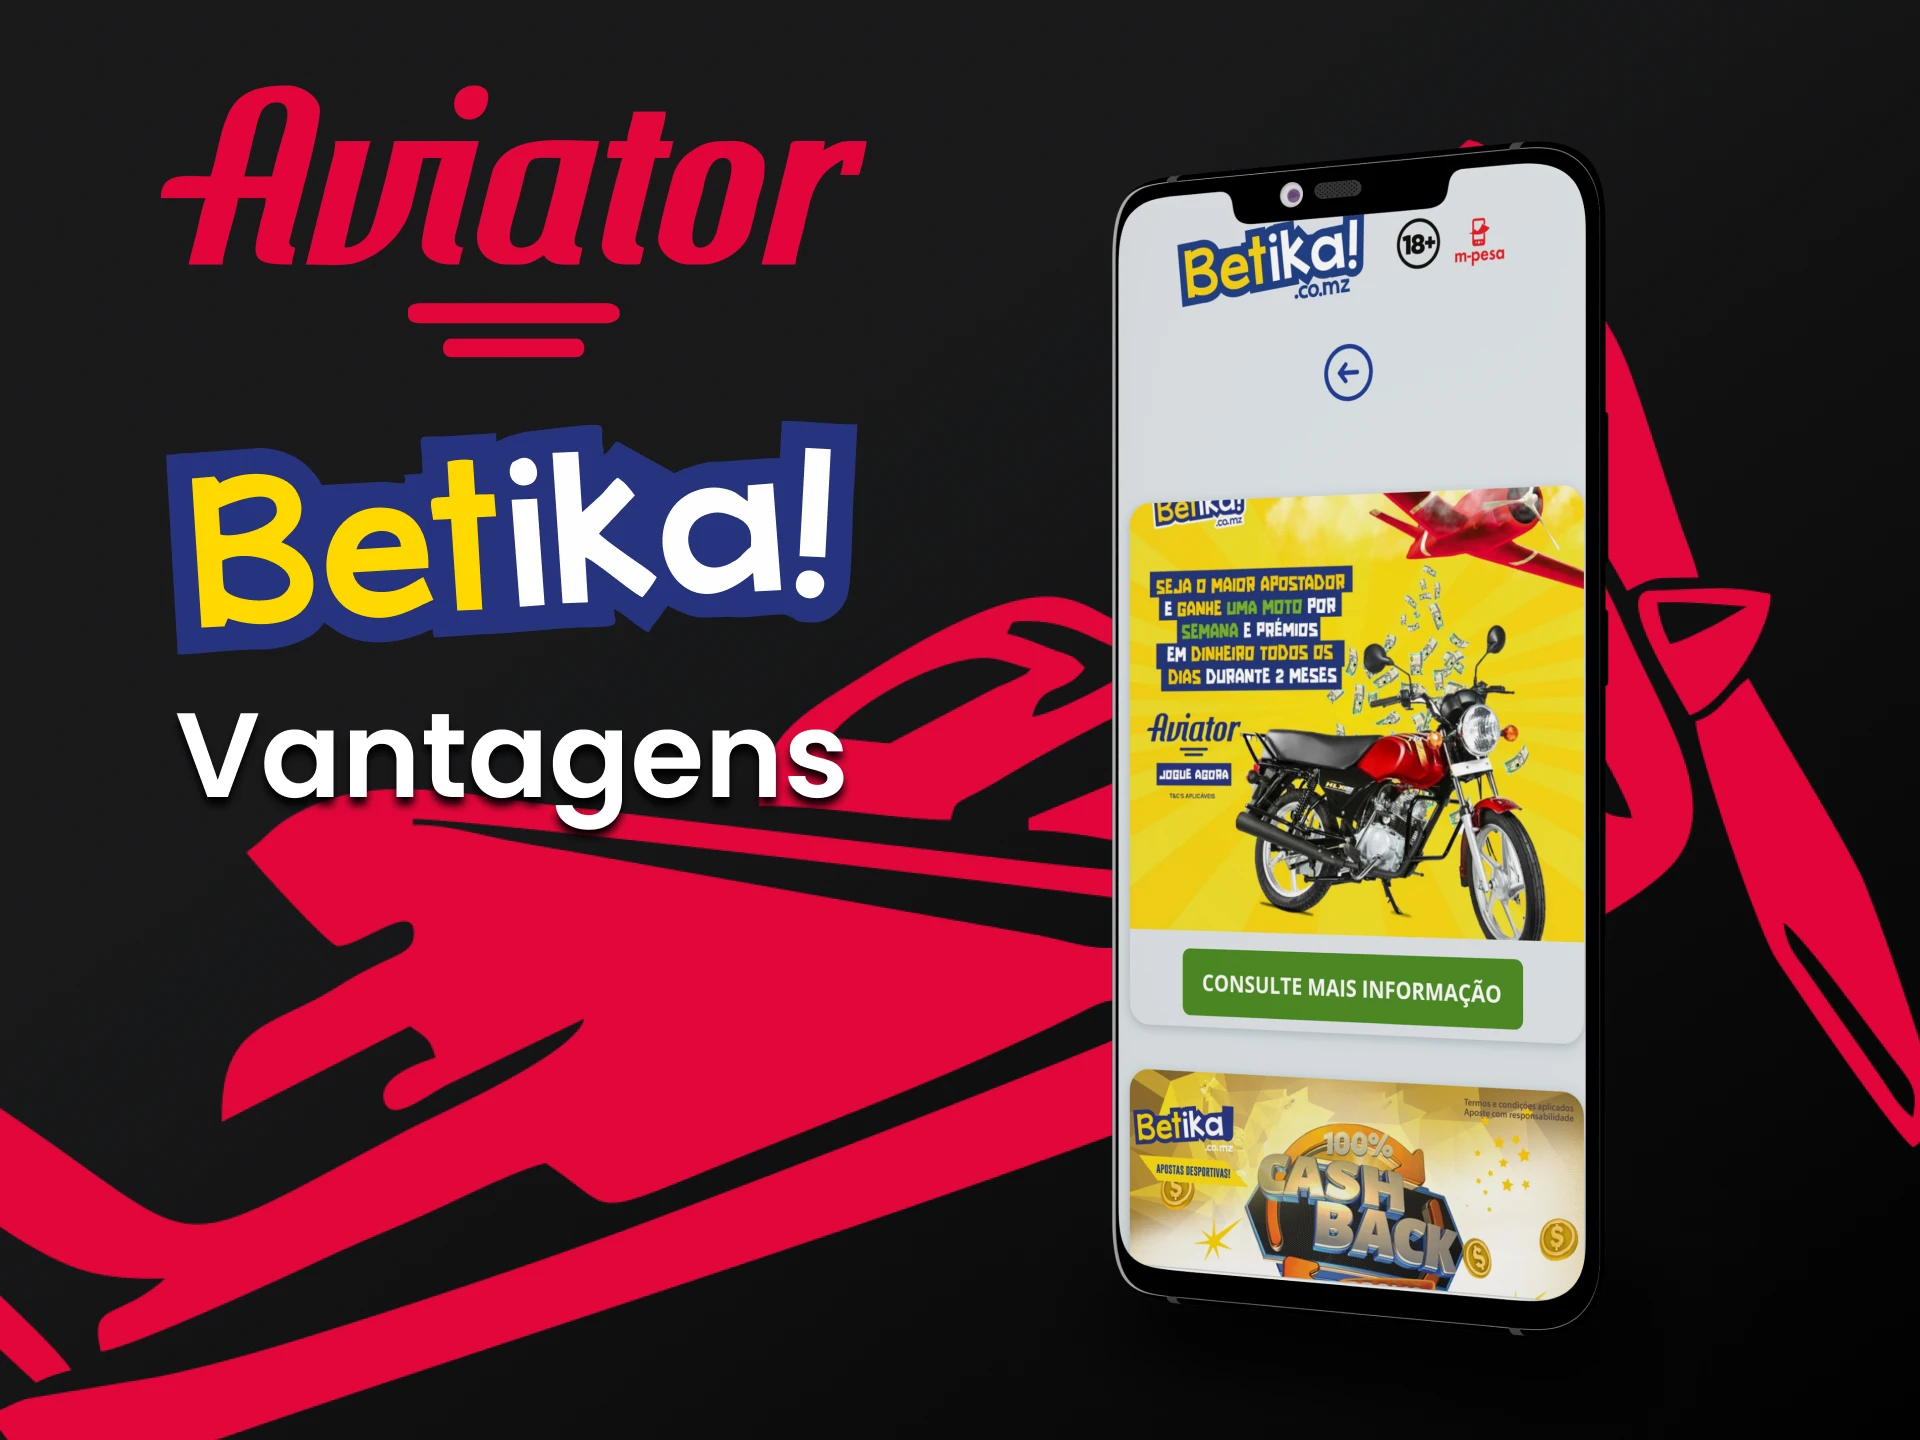 Conheça os benefícios do aplicativo Betika.